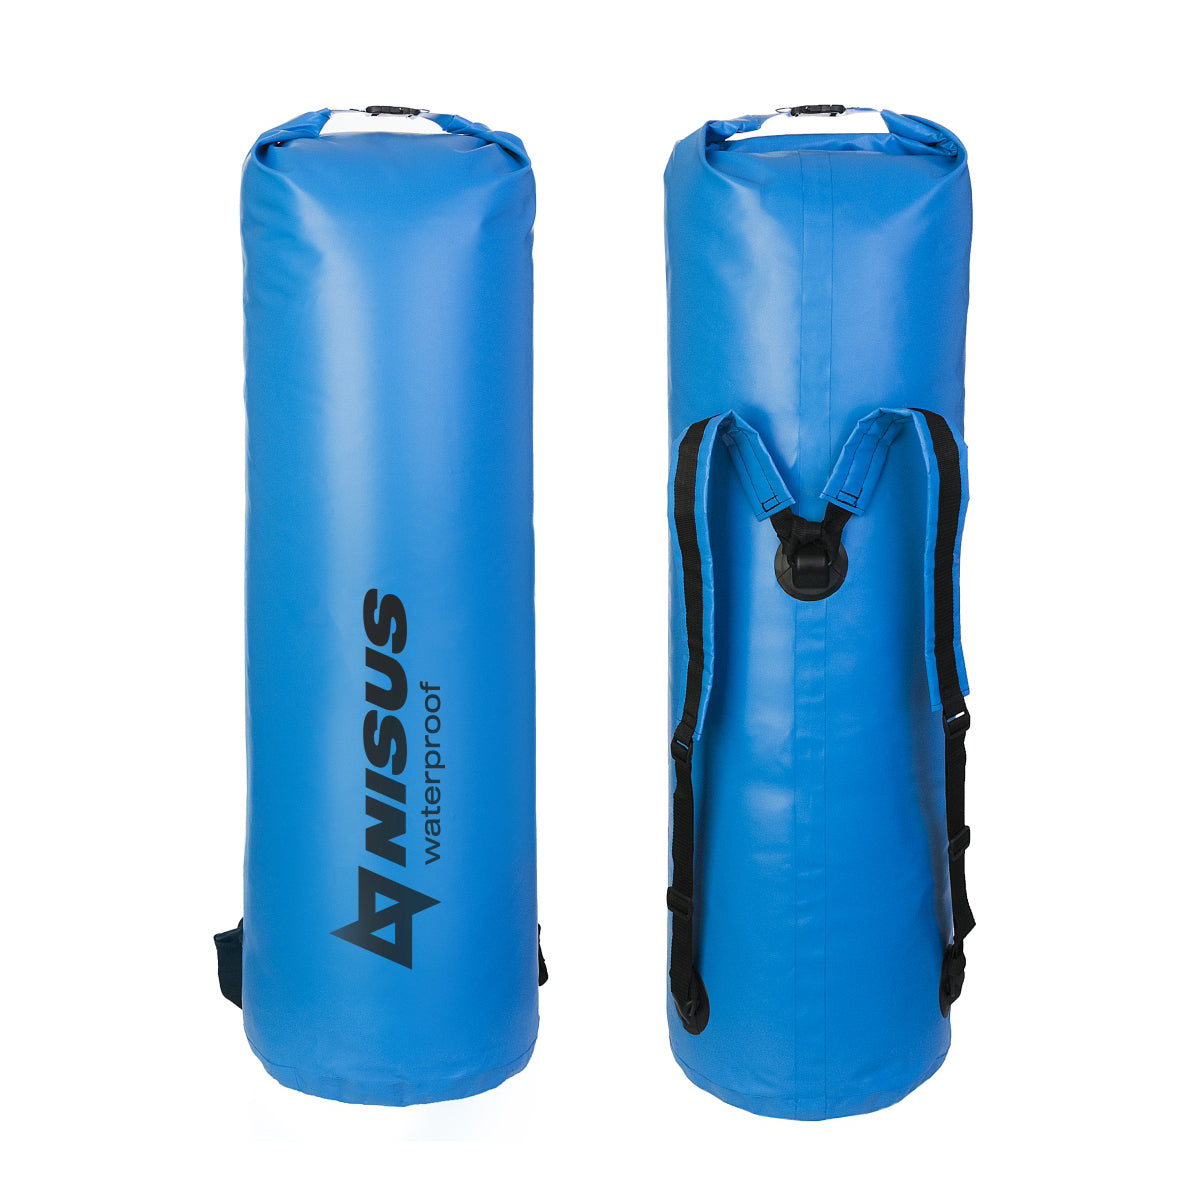 90L Waterproof Bag, Large Dry Bag with Shoulder Straps